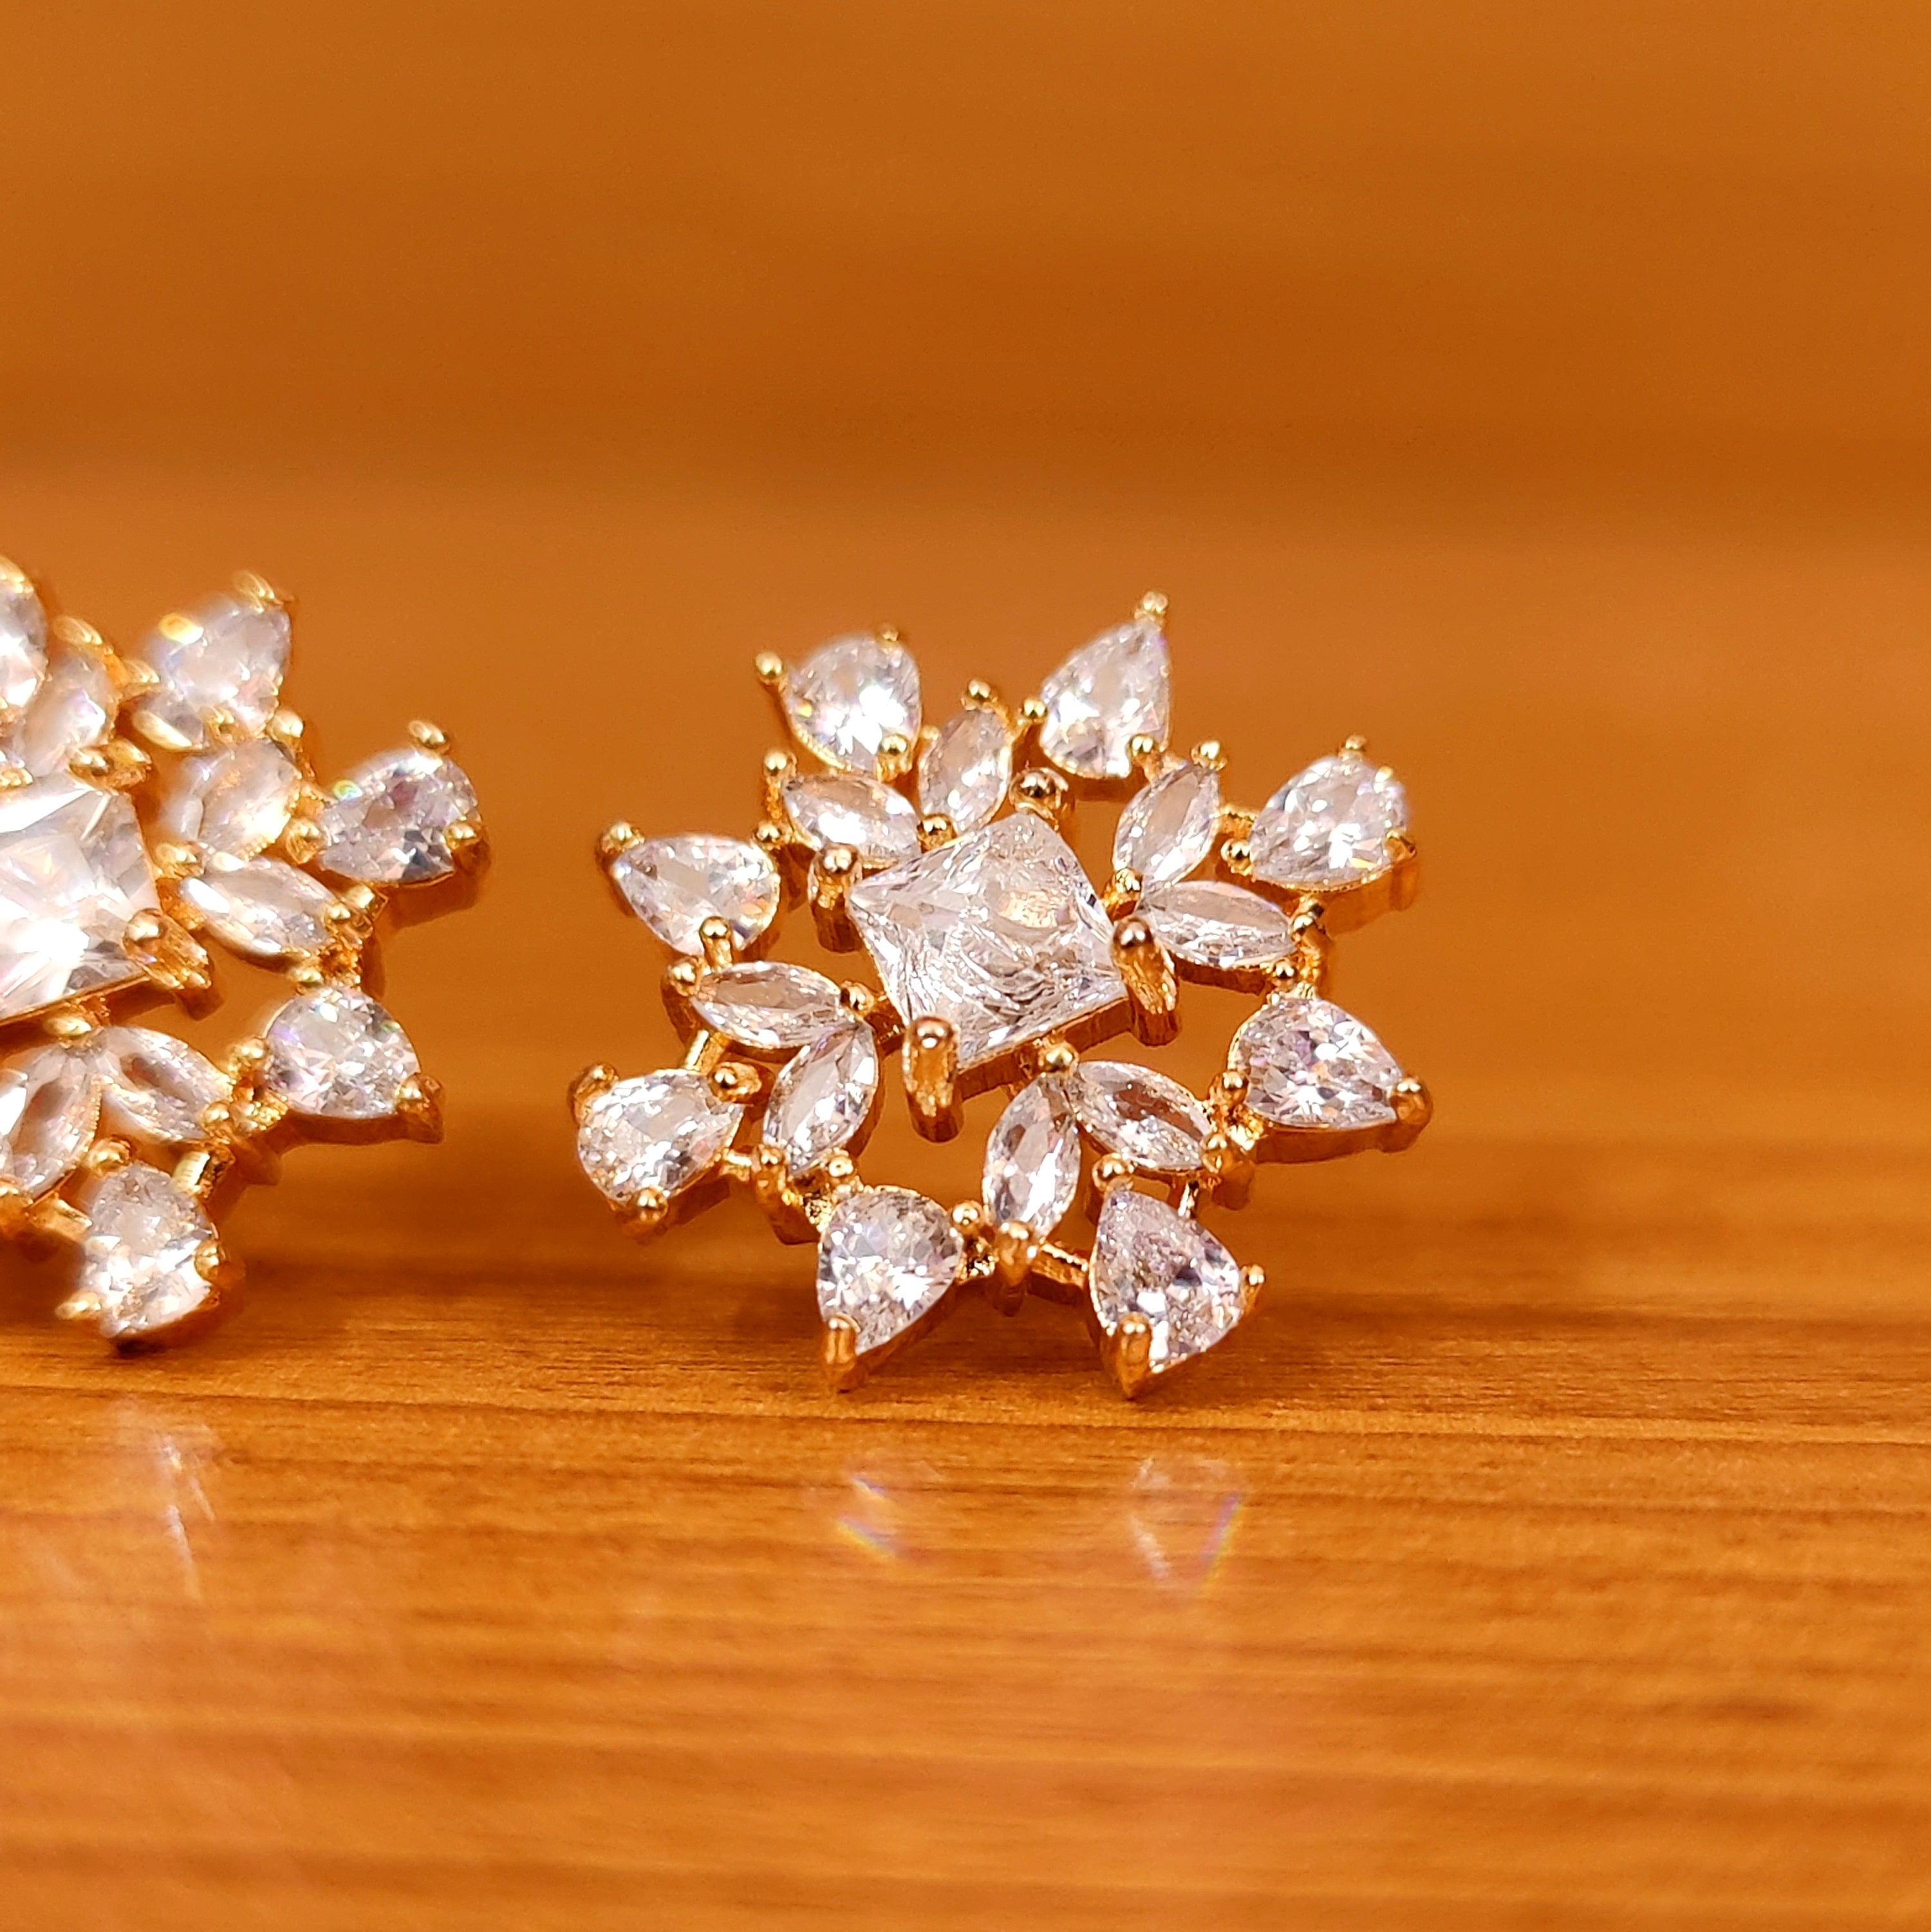 Buy Diamond Spirals Stud Earrings 14K Yellow Gold Earrings Online in India   Etsy